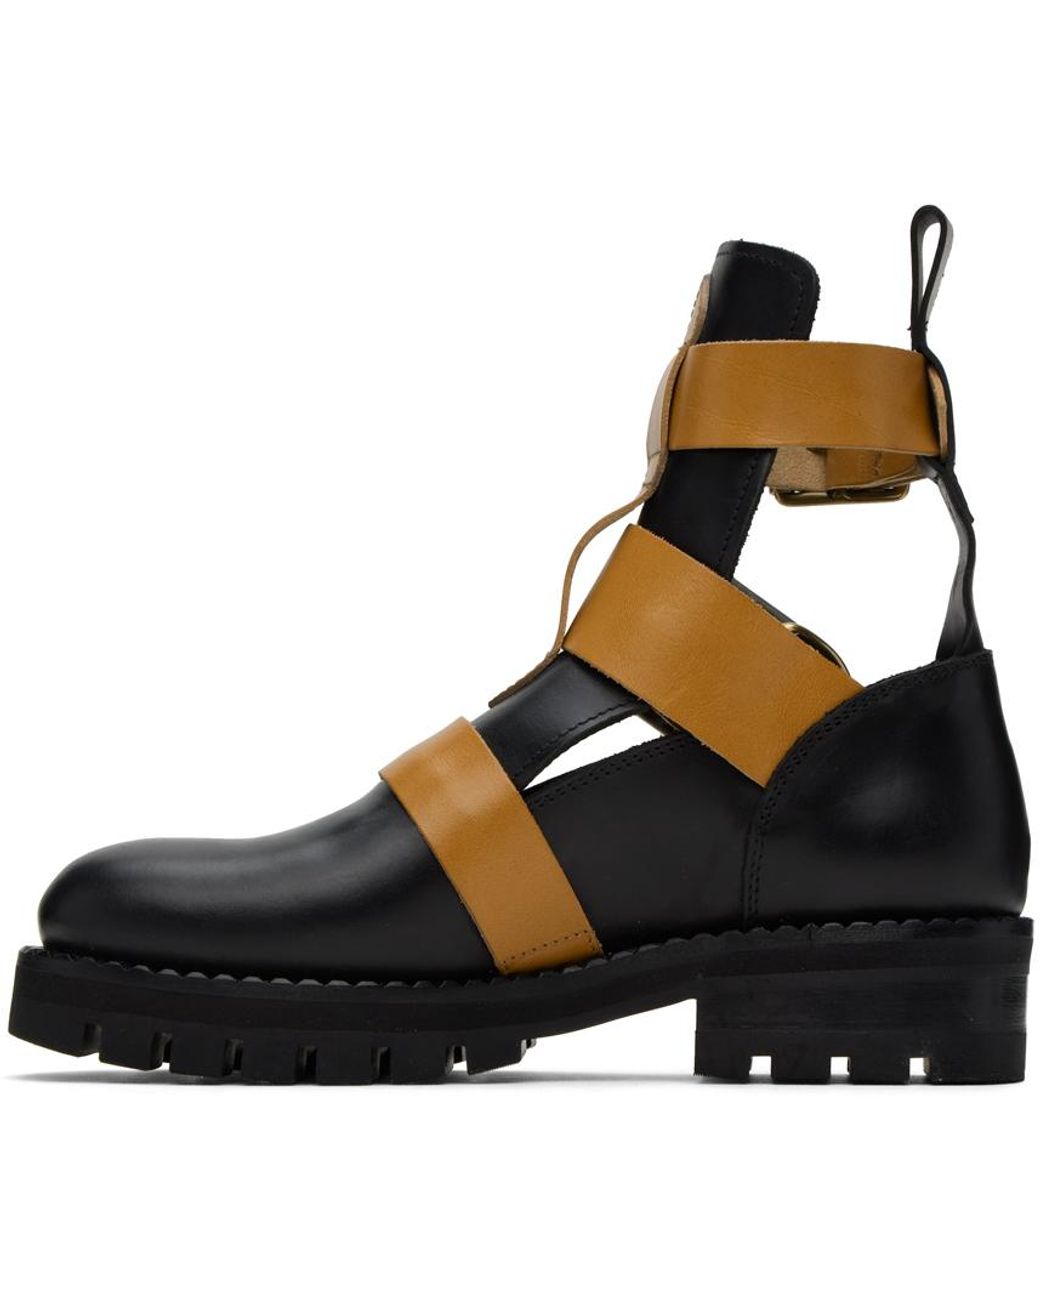 Vivienne Westwood Black Rome Boots | Lyst